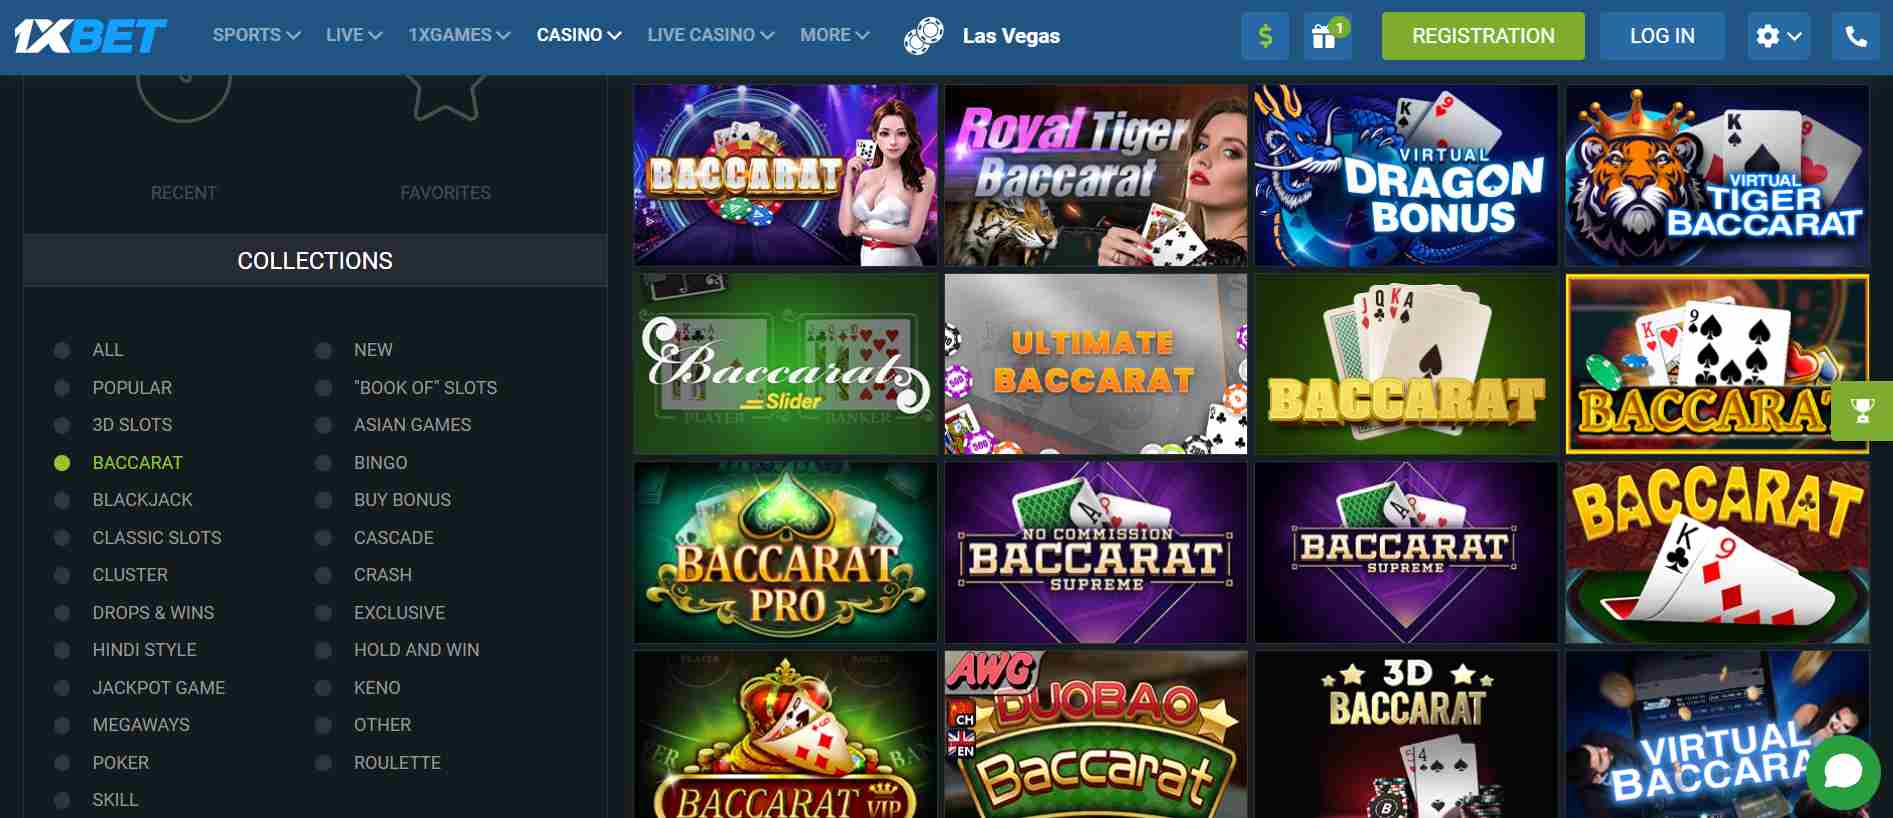 1xbet India casino games